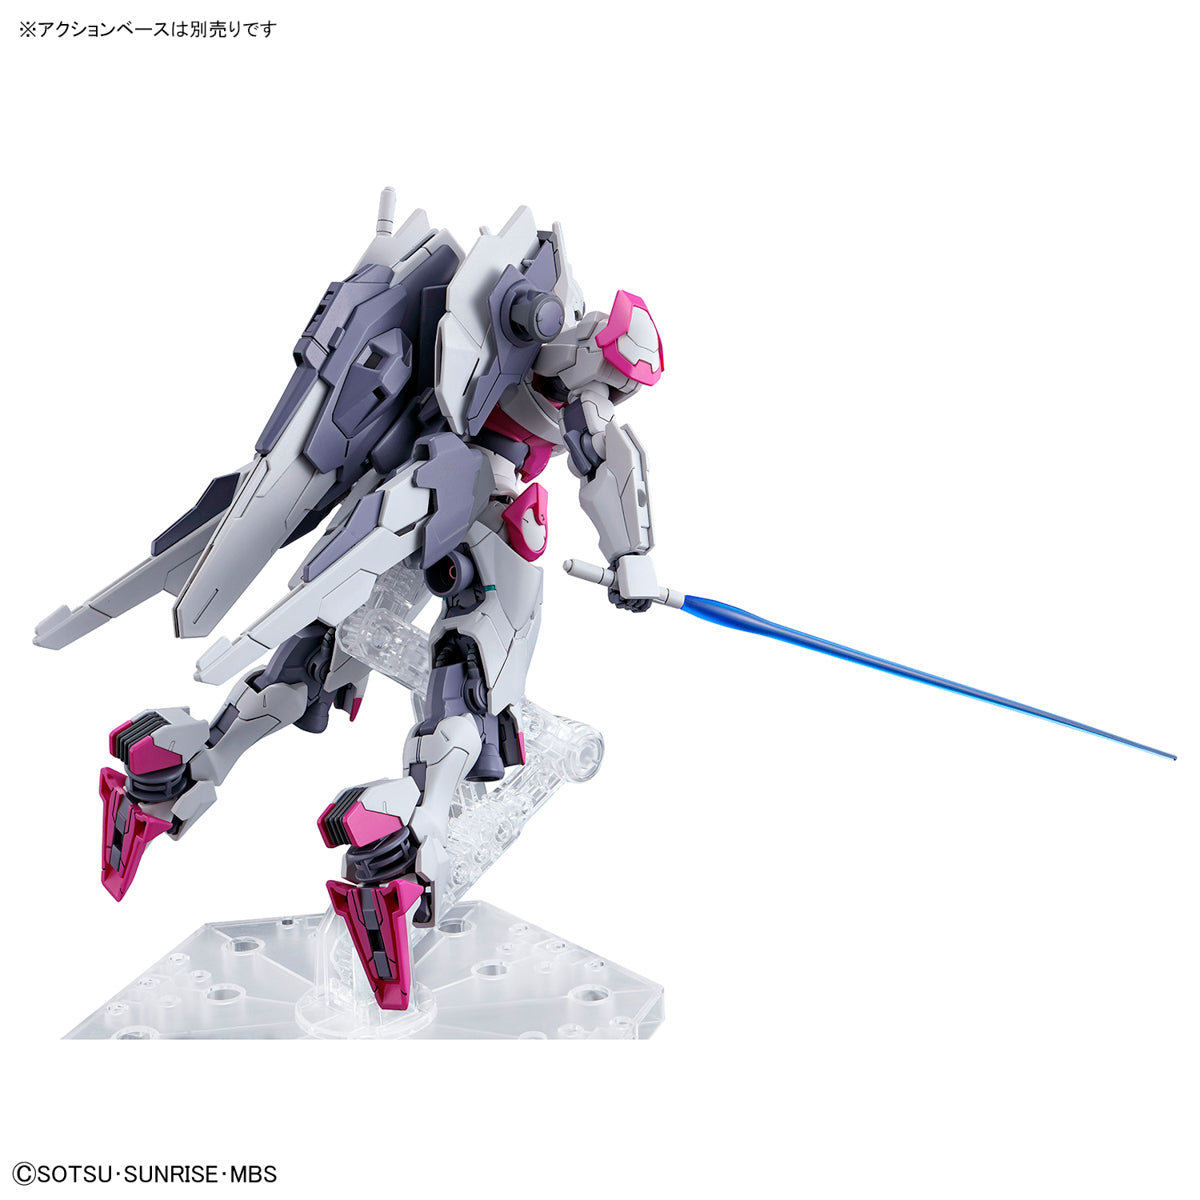 HGTWFM 1/144 #03 Gundam Aerial – USA Gundam Store